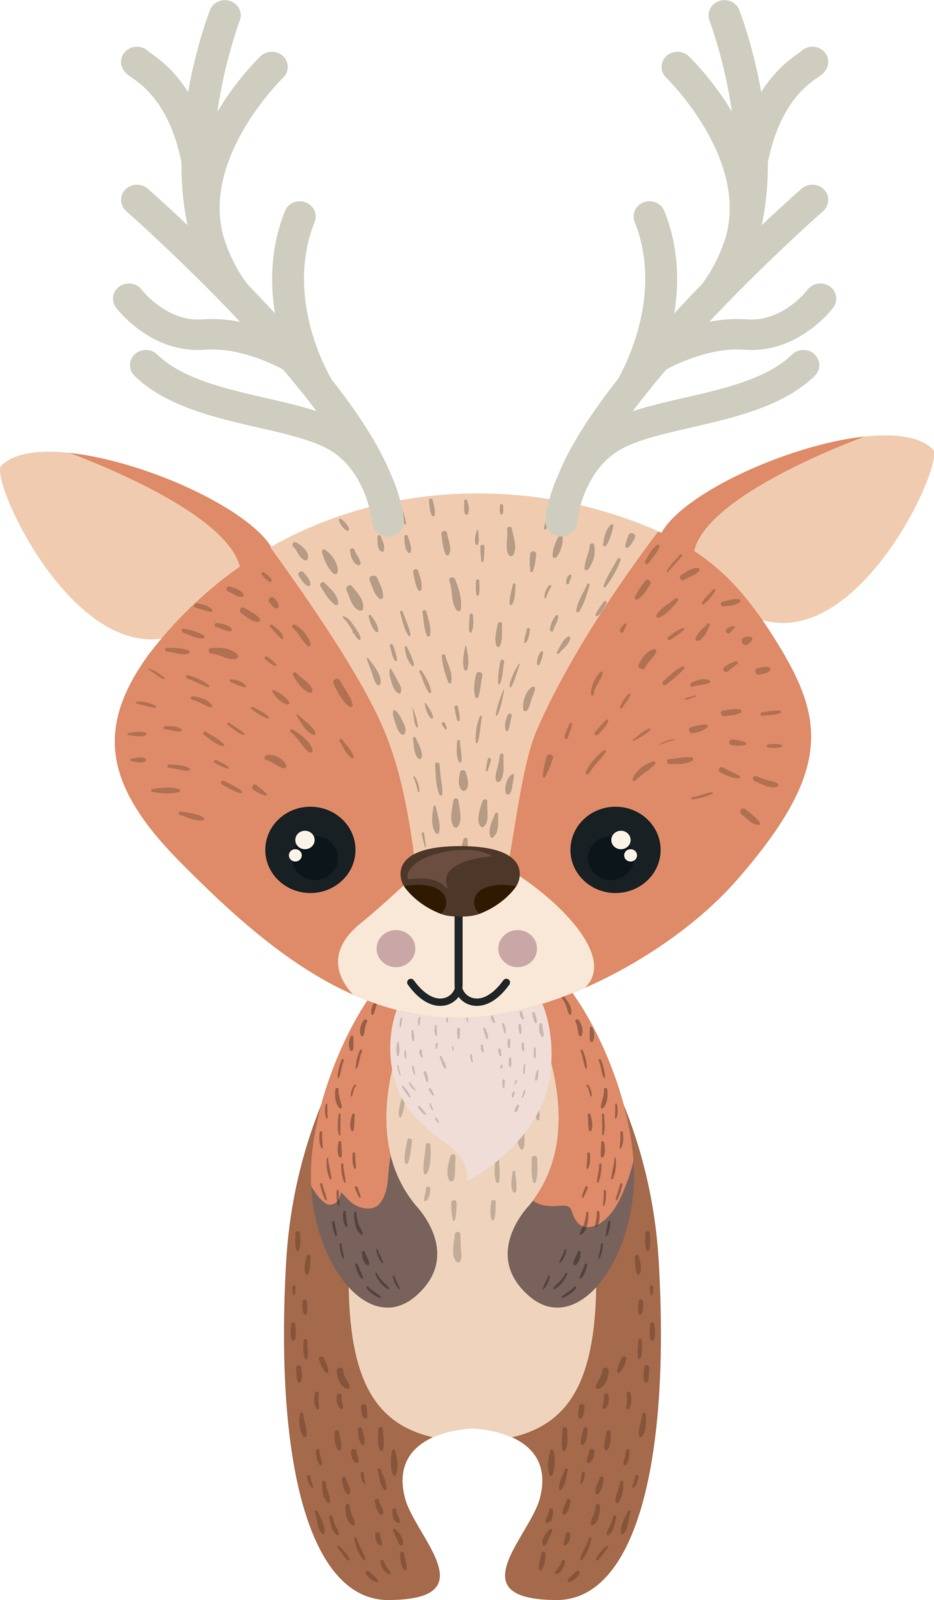 Baby deer, illustration, vector on white background. by Morphart